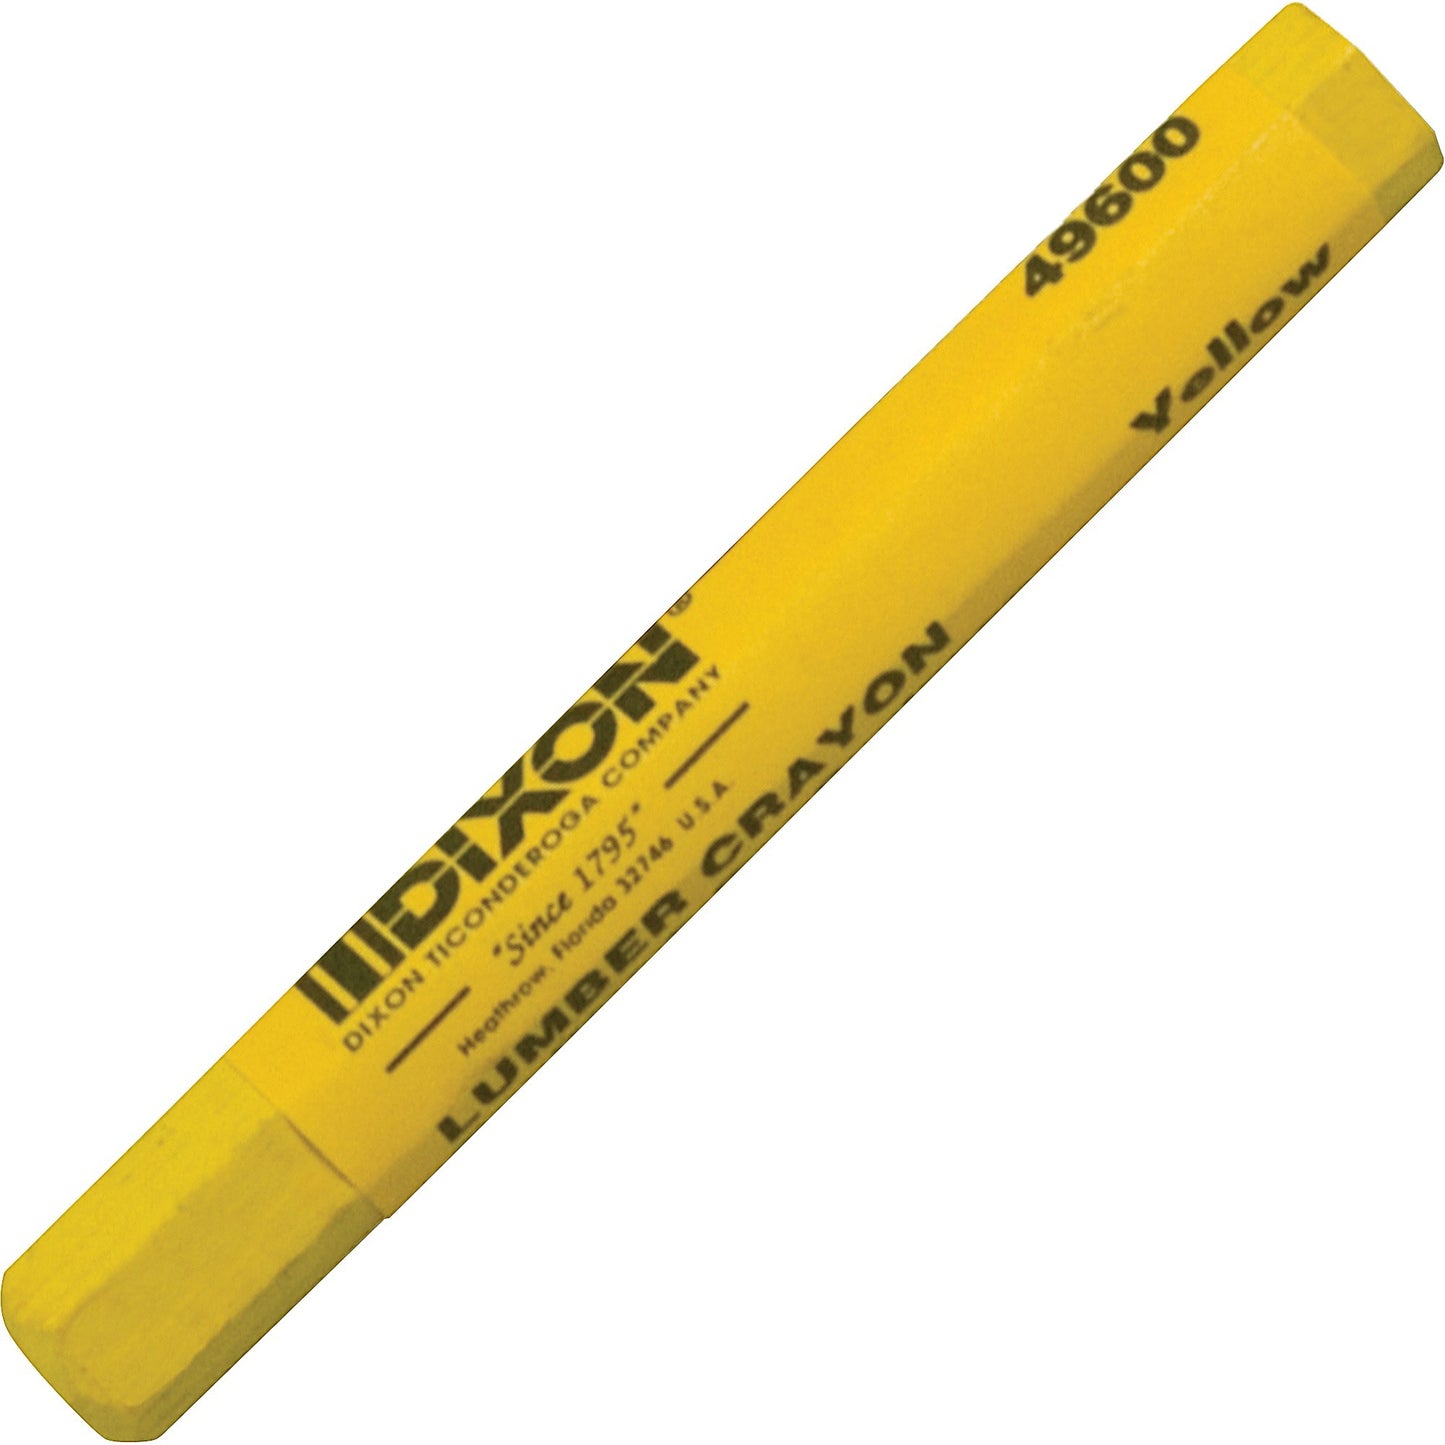 Dixon Lumber Crayons